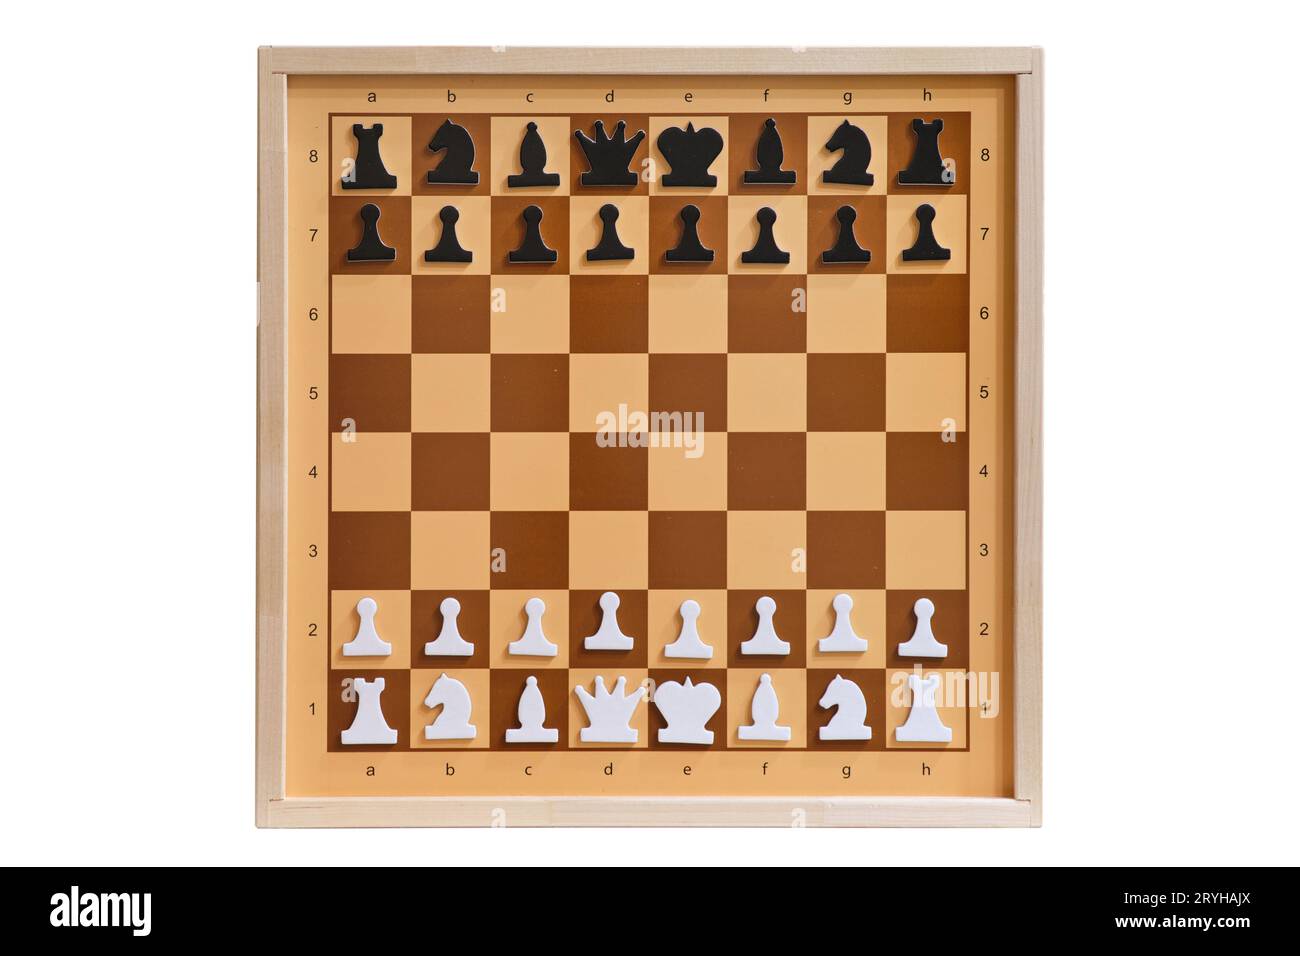 Placement des pièces d'échecs dans la position de départ sur l'échiquier de démonstration. Position des échecs, isolée sur fond blanc Banque D'Images